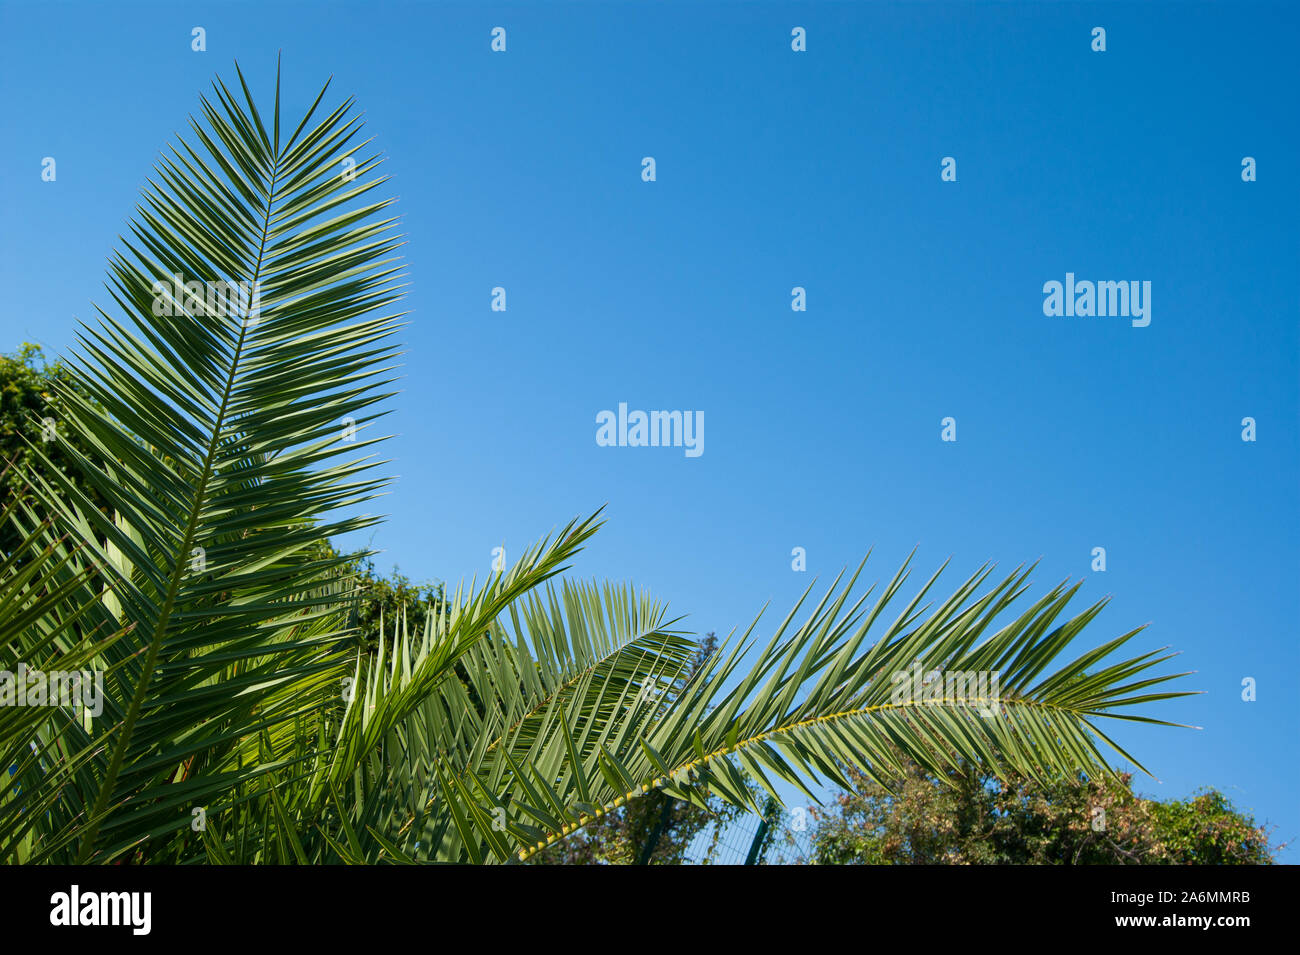 Palma triangolare immagini e fotografie stock ad alta risoluzione - Alamy